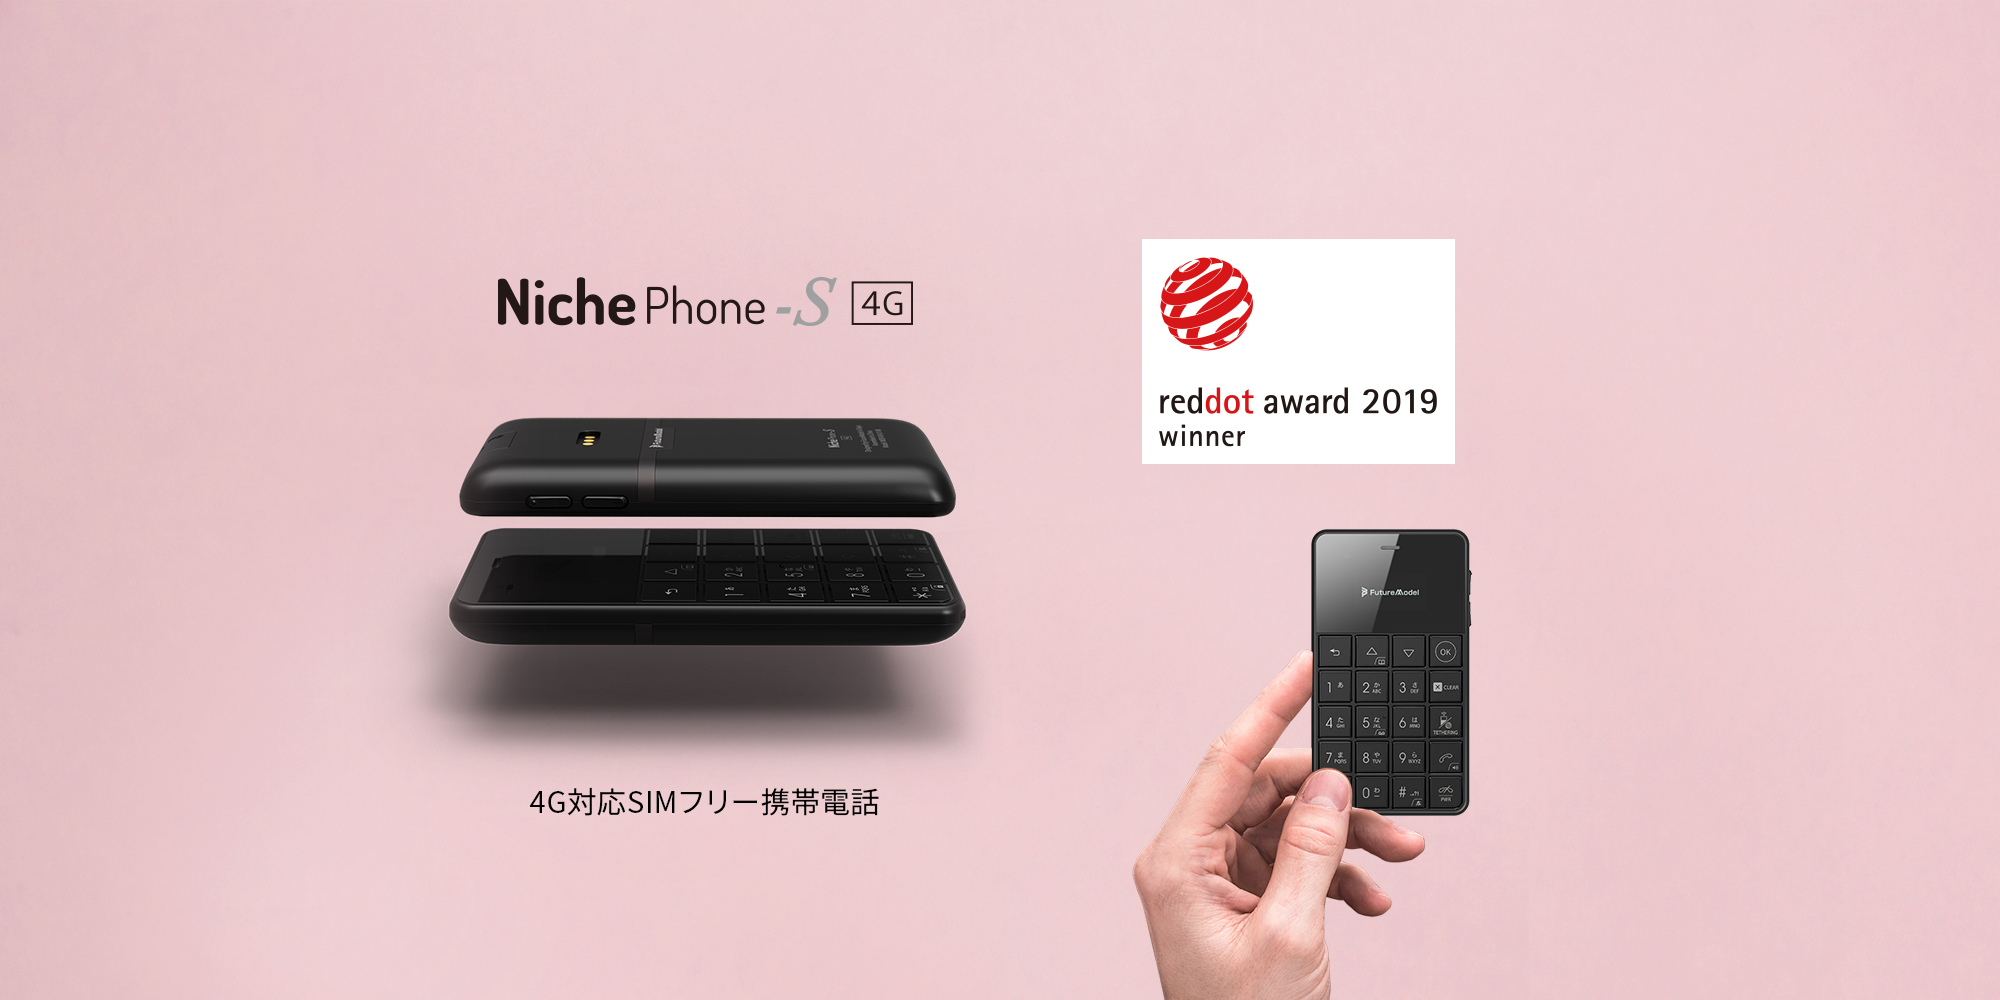 Niche_Phone-S 4G 製品情報｜フューチャーモデル株式会社